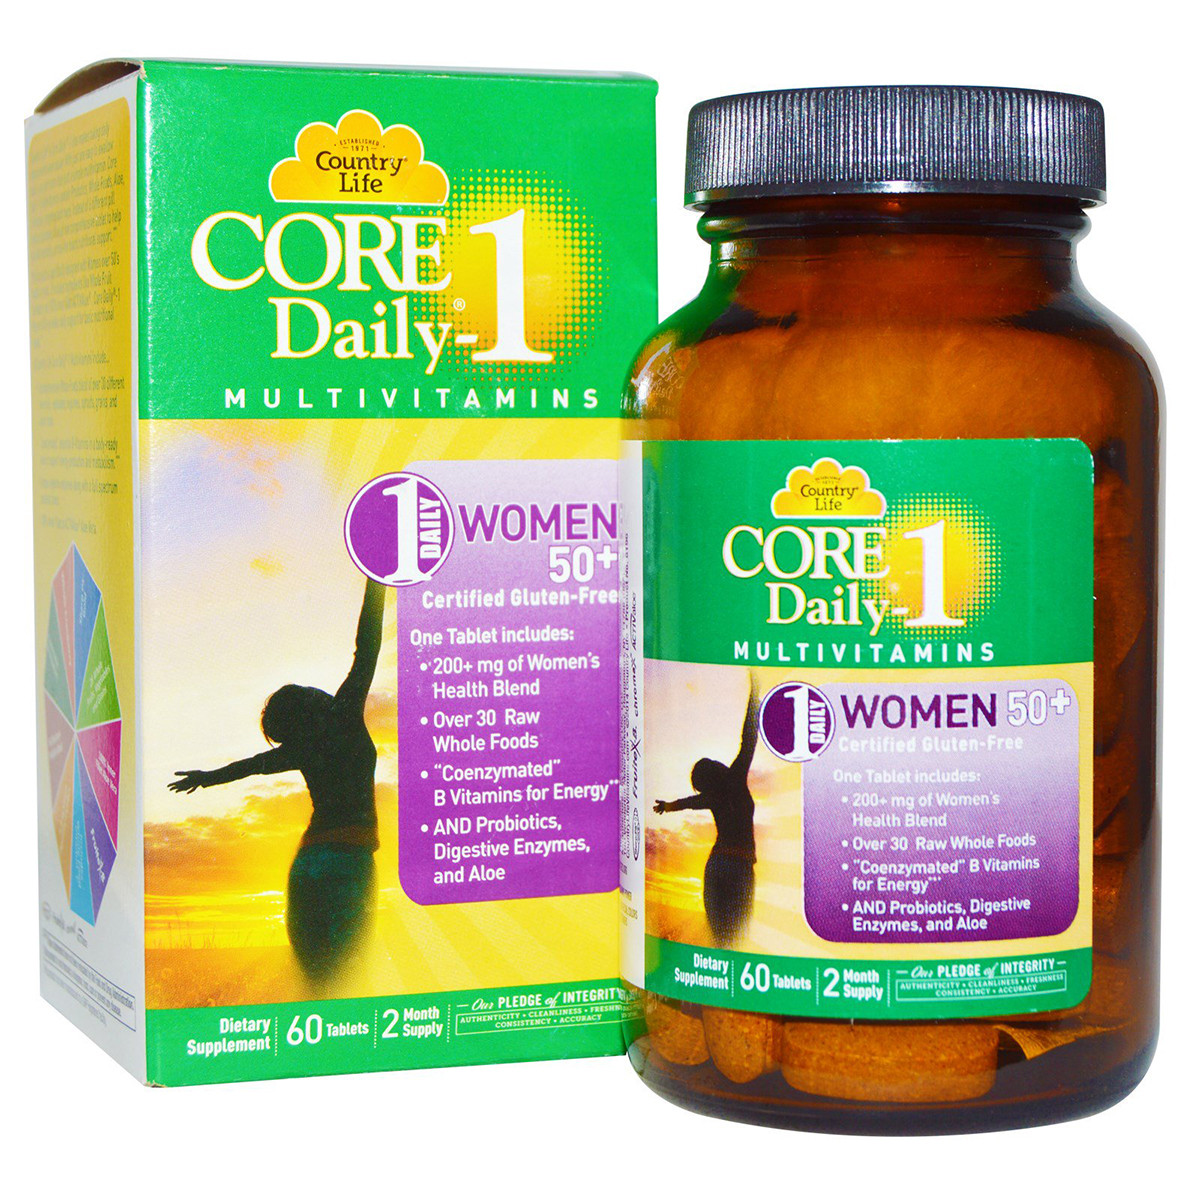 Вітаміни для Жінок, 50+, Core Daily-1 for Women 50+, Country Life, 60 таблеток